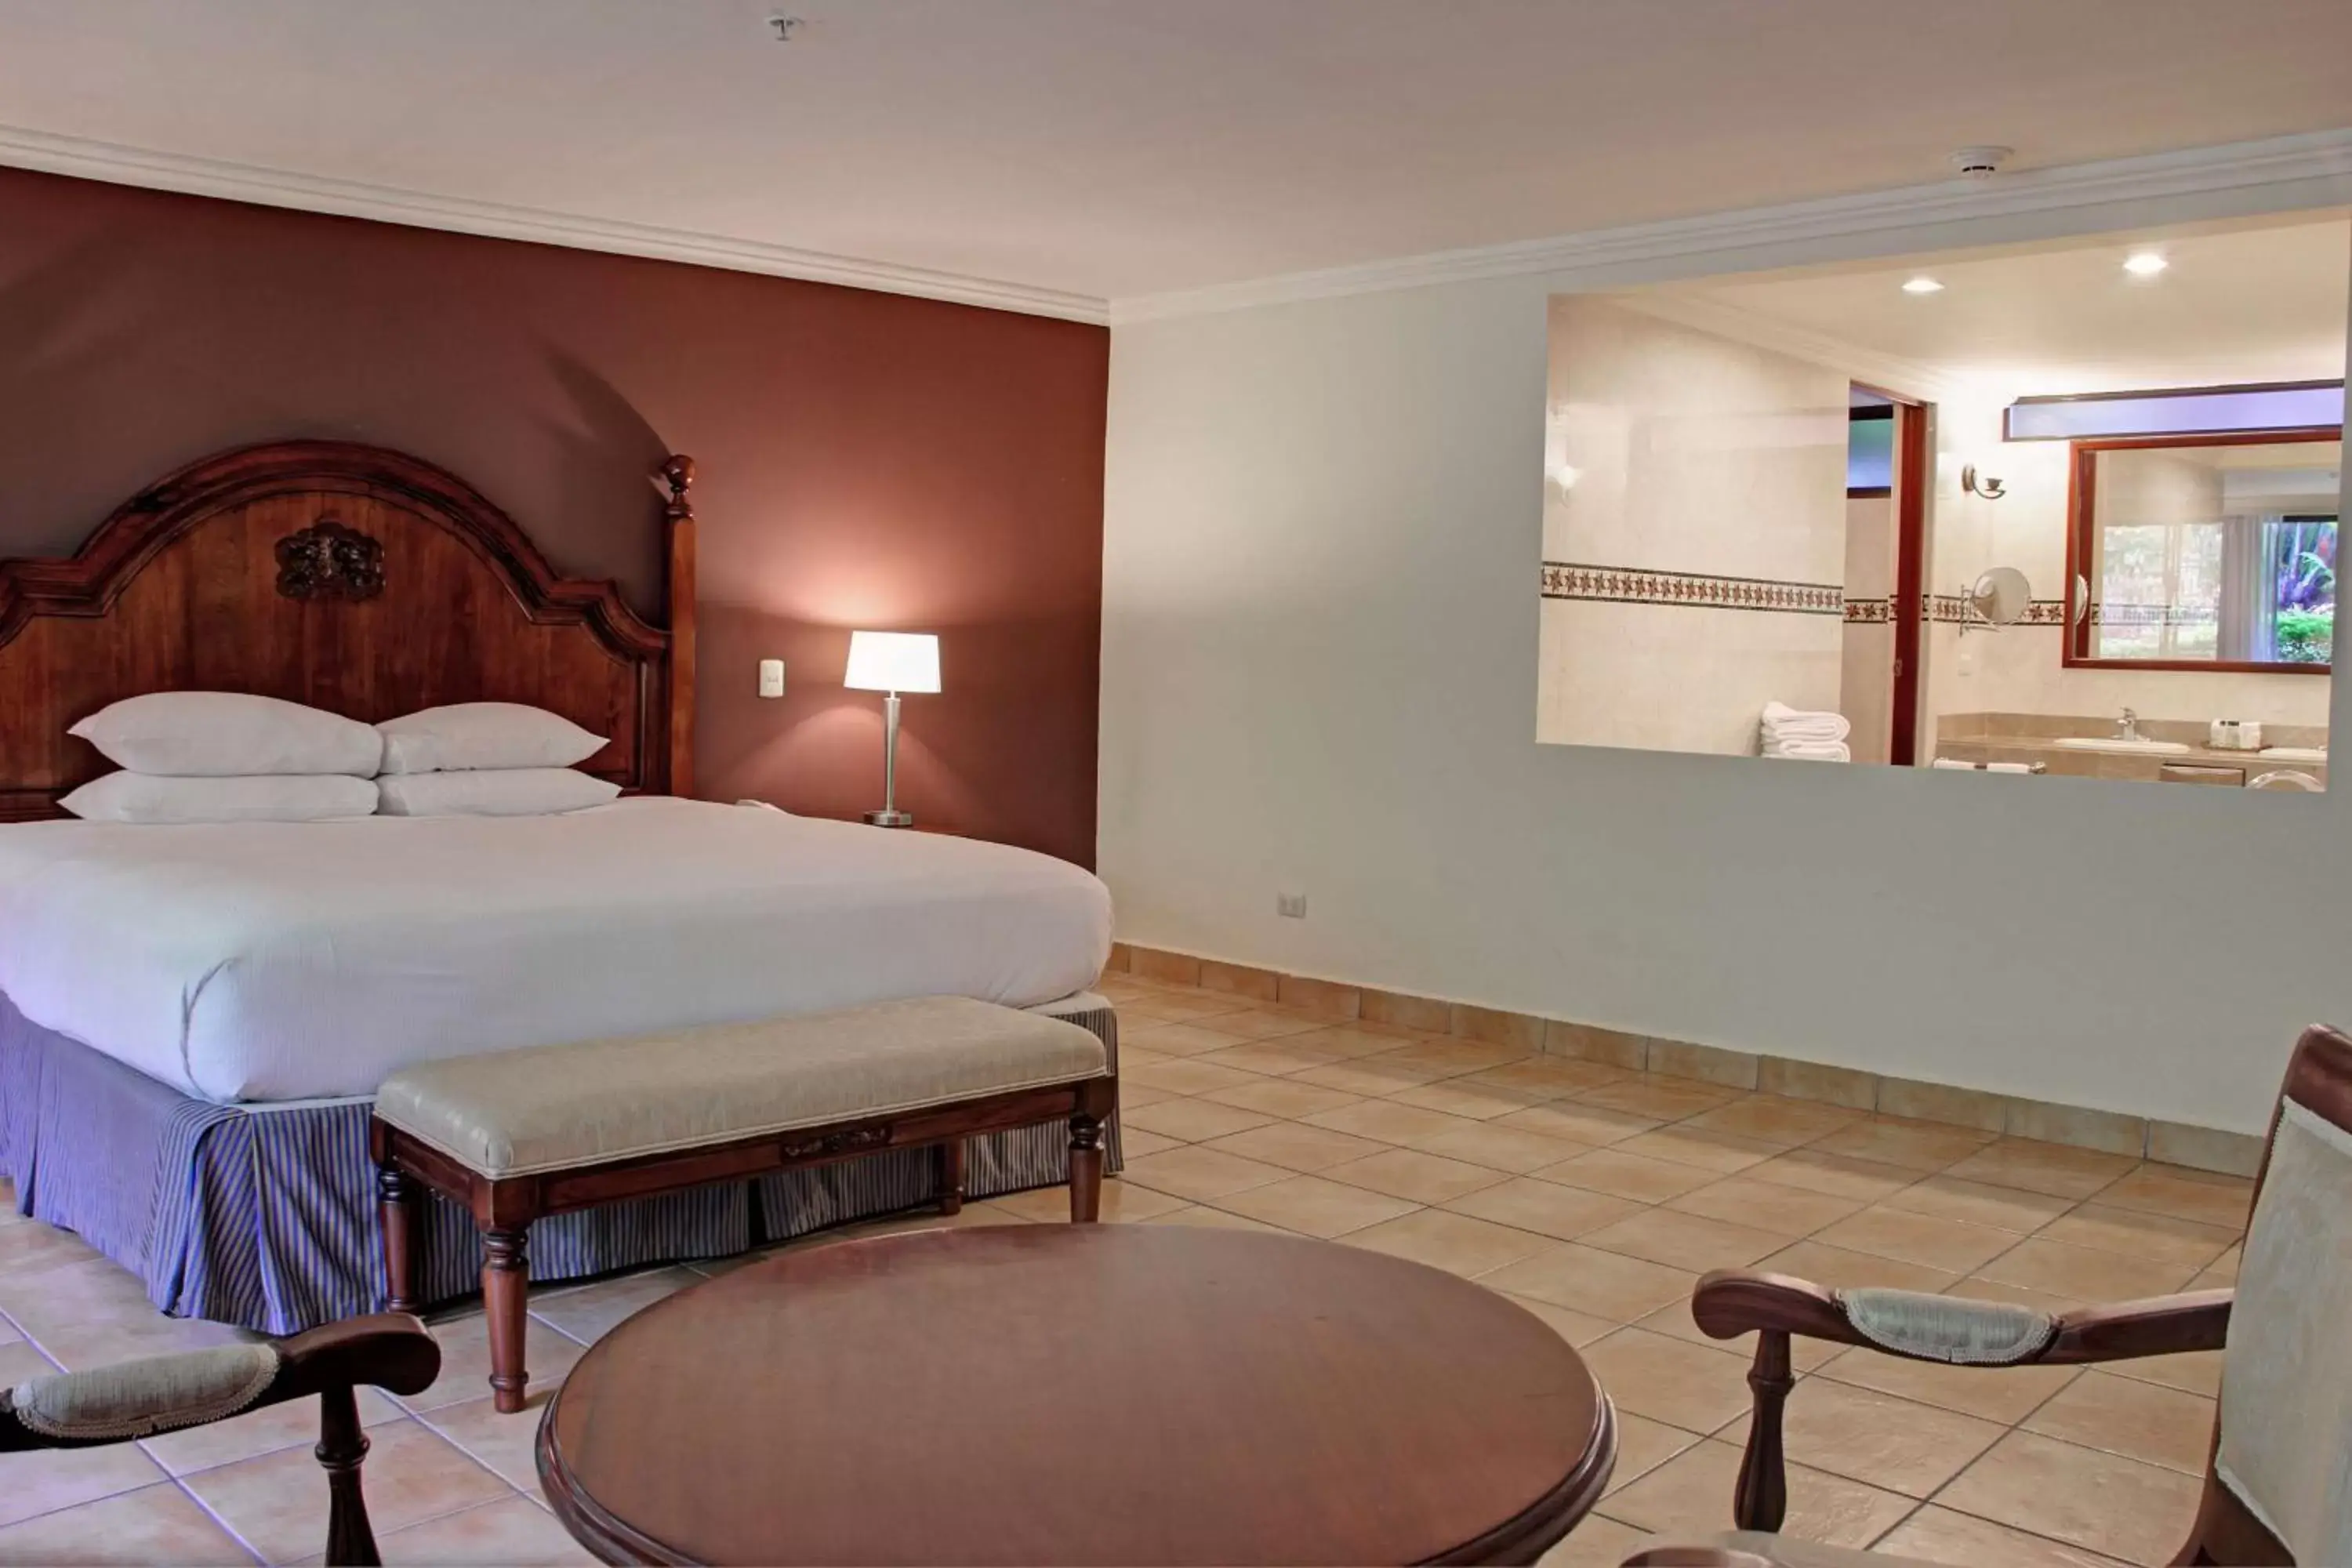 Bed in Hilton Cariari DoubleTree San Jose - Costa Rica